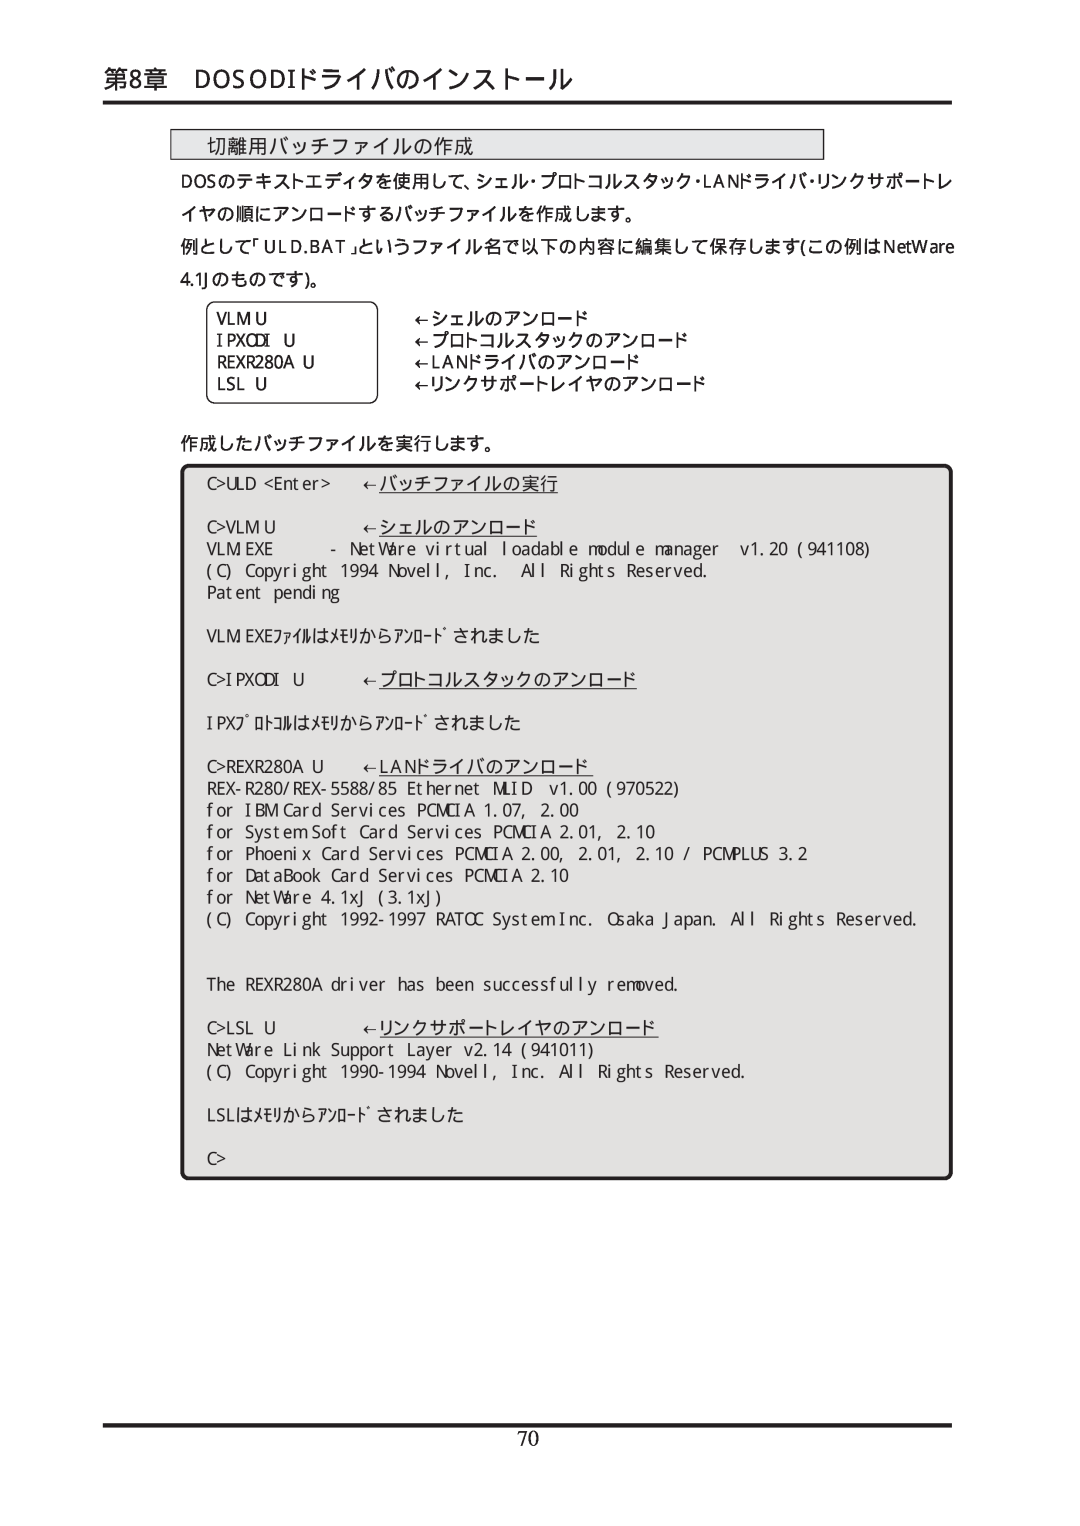 Ratoc Systems REX-R280 manual 第8章 DOSODIドライバのインストール, Vlm.Exeﾌｧｲﾙはﾒﾓﾘからｱﾝﾛｰﾄﾞされました, Ipxﾌﾟﾛﾄｺﾙはﾒﾓﾘからｱﾝﾛｰﾄﾞされました, CULD Enter 